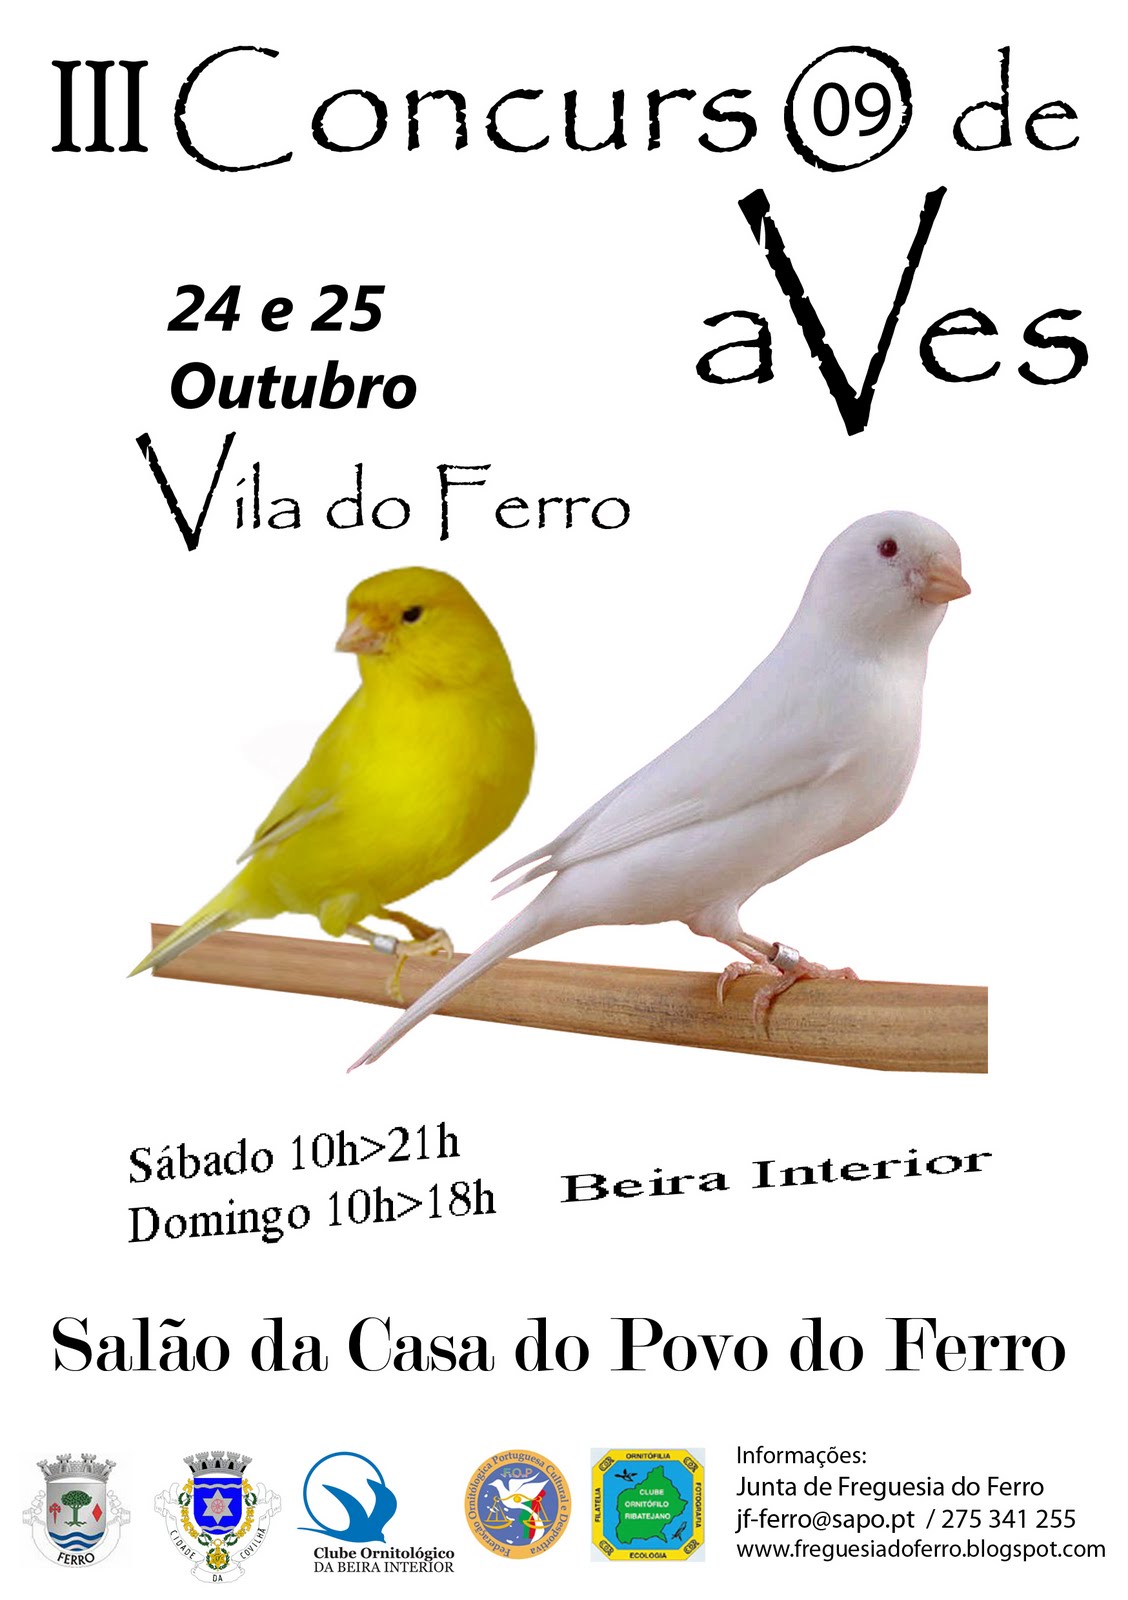 [III+Concurso+de+Aves+Beira+Interior+2009.jpg]